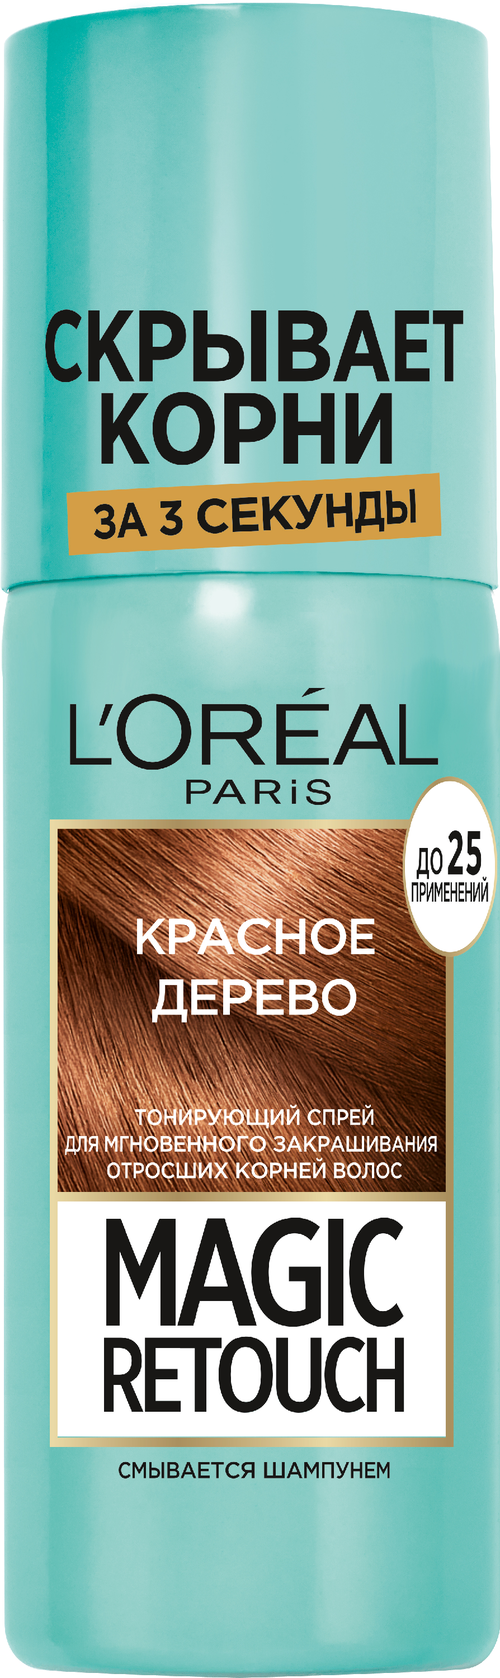 LOreal Paris Спрей Magic Retouch для мгновенного закрашивания отросших корней волос, красное дерево, 75 мл, 75 г